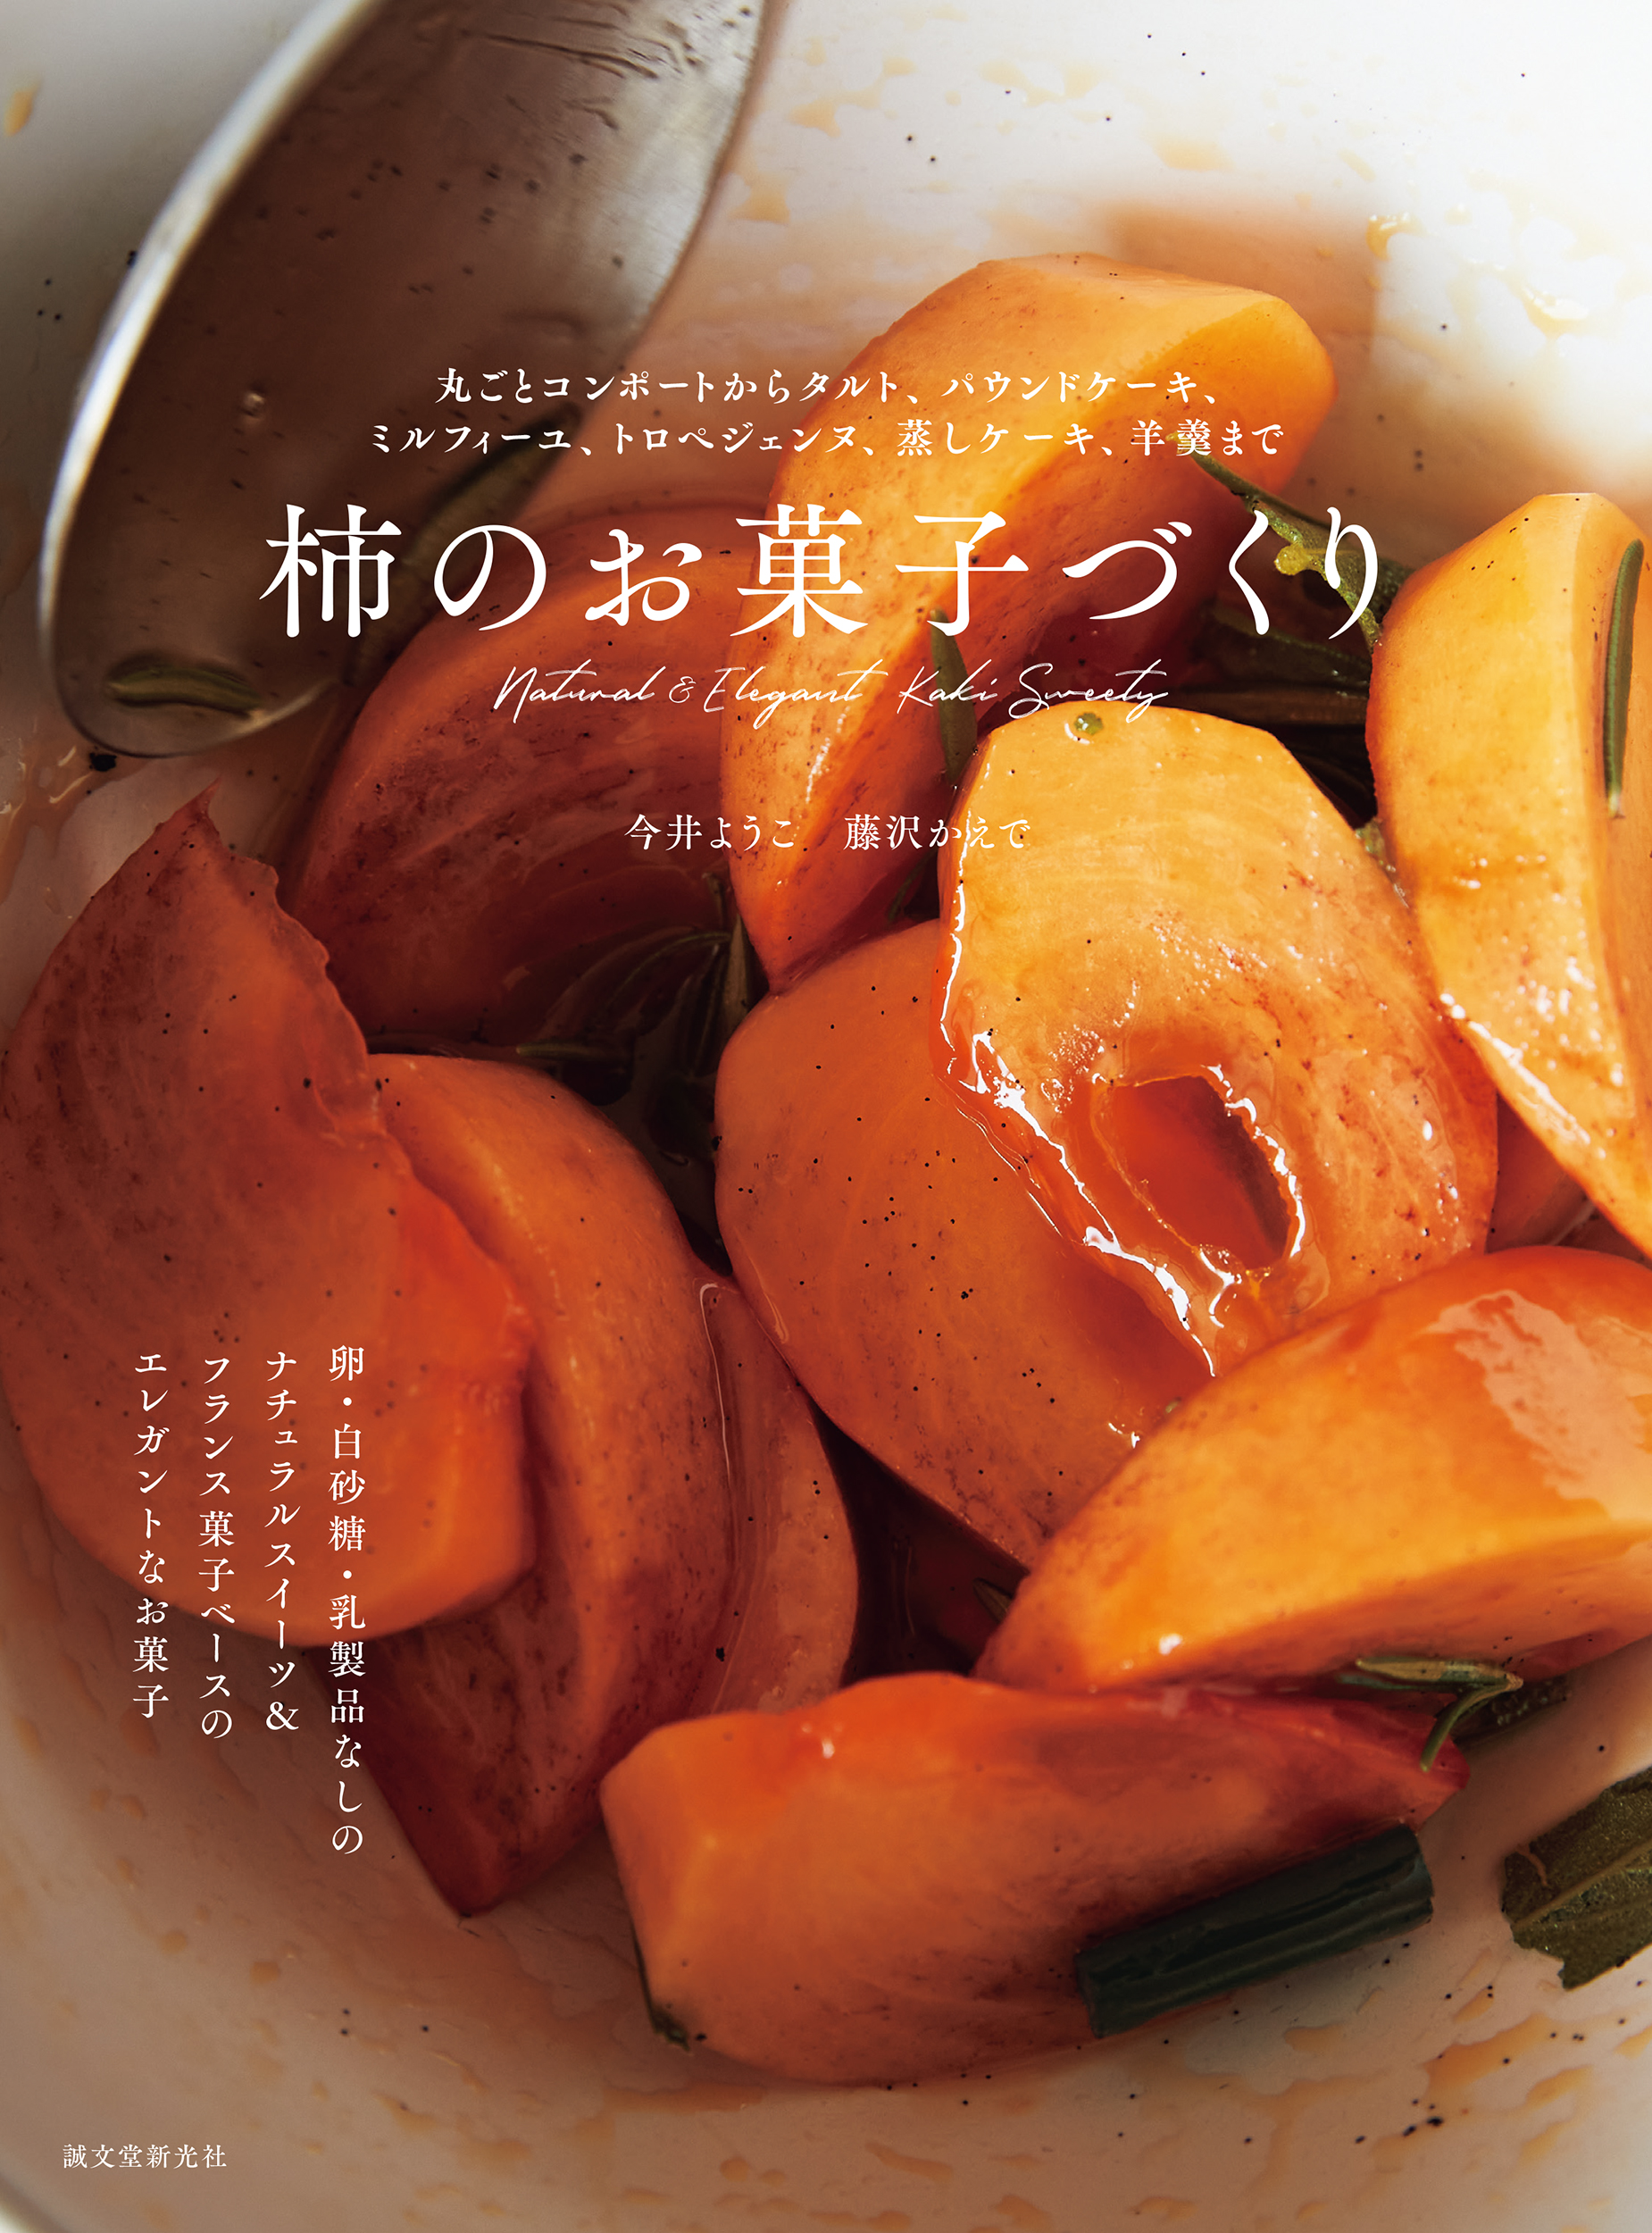 柿のお菓子55品を掲載したレシピ本に注目